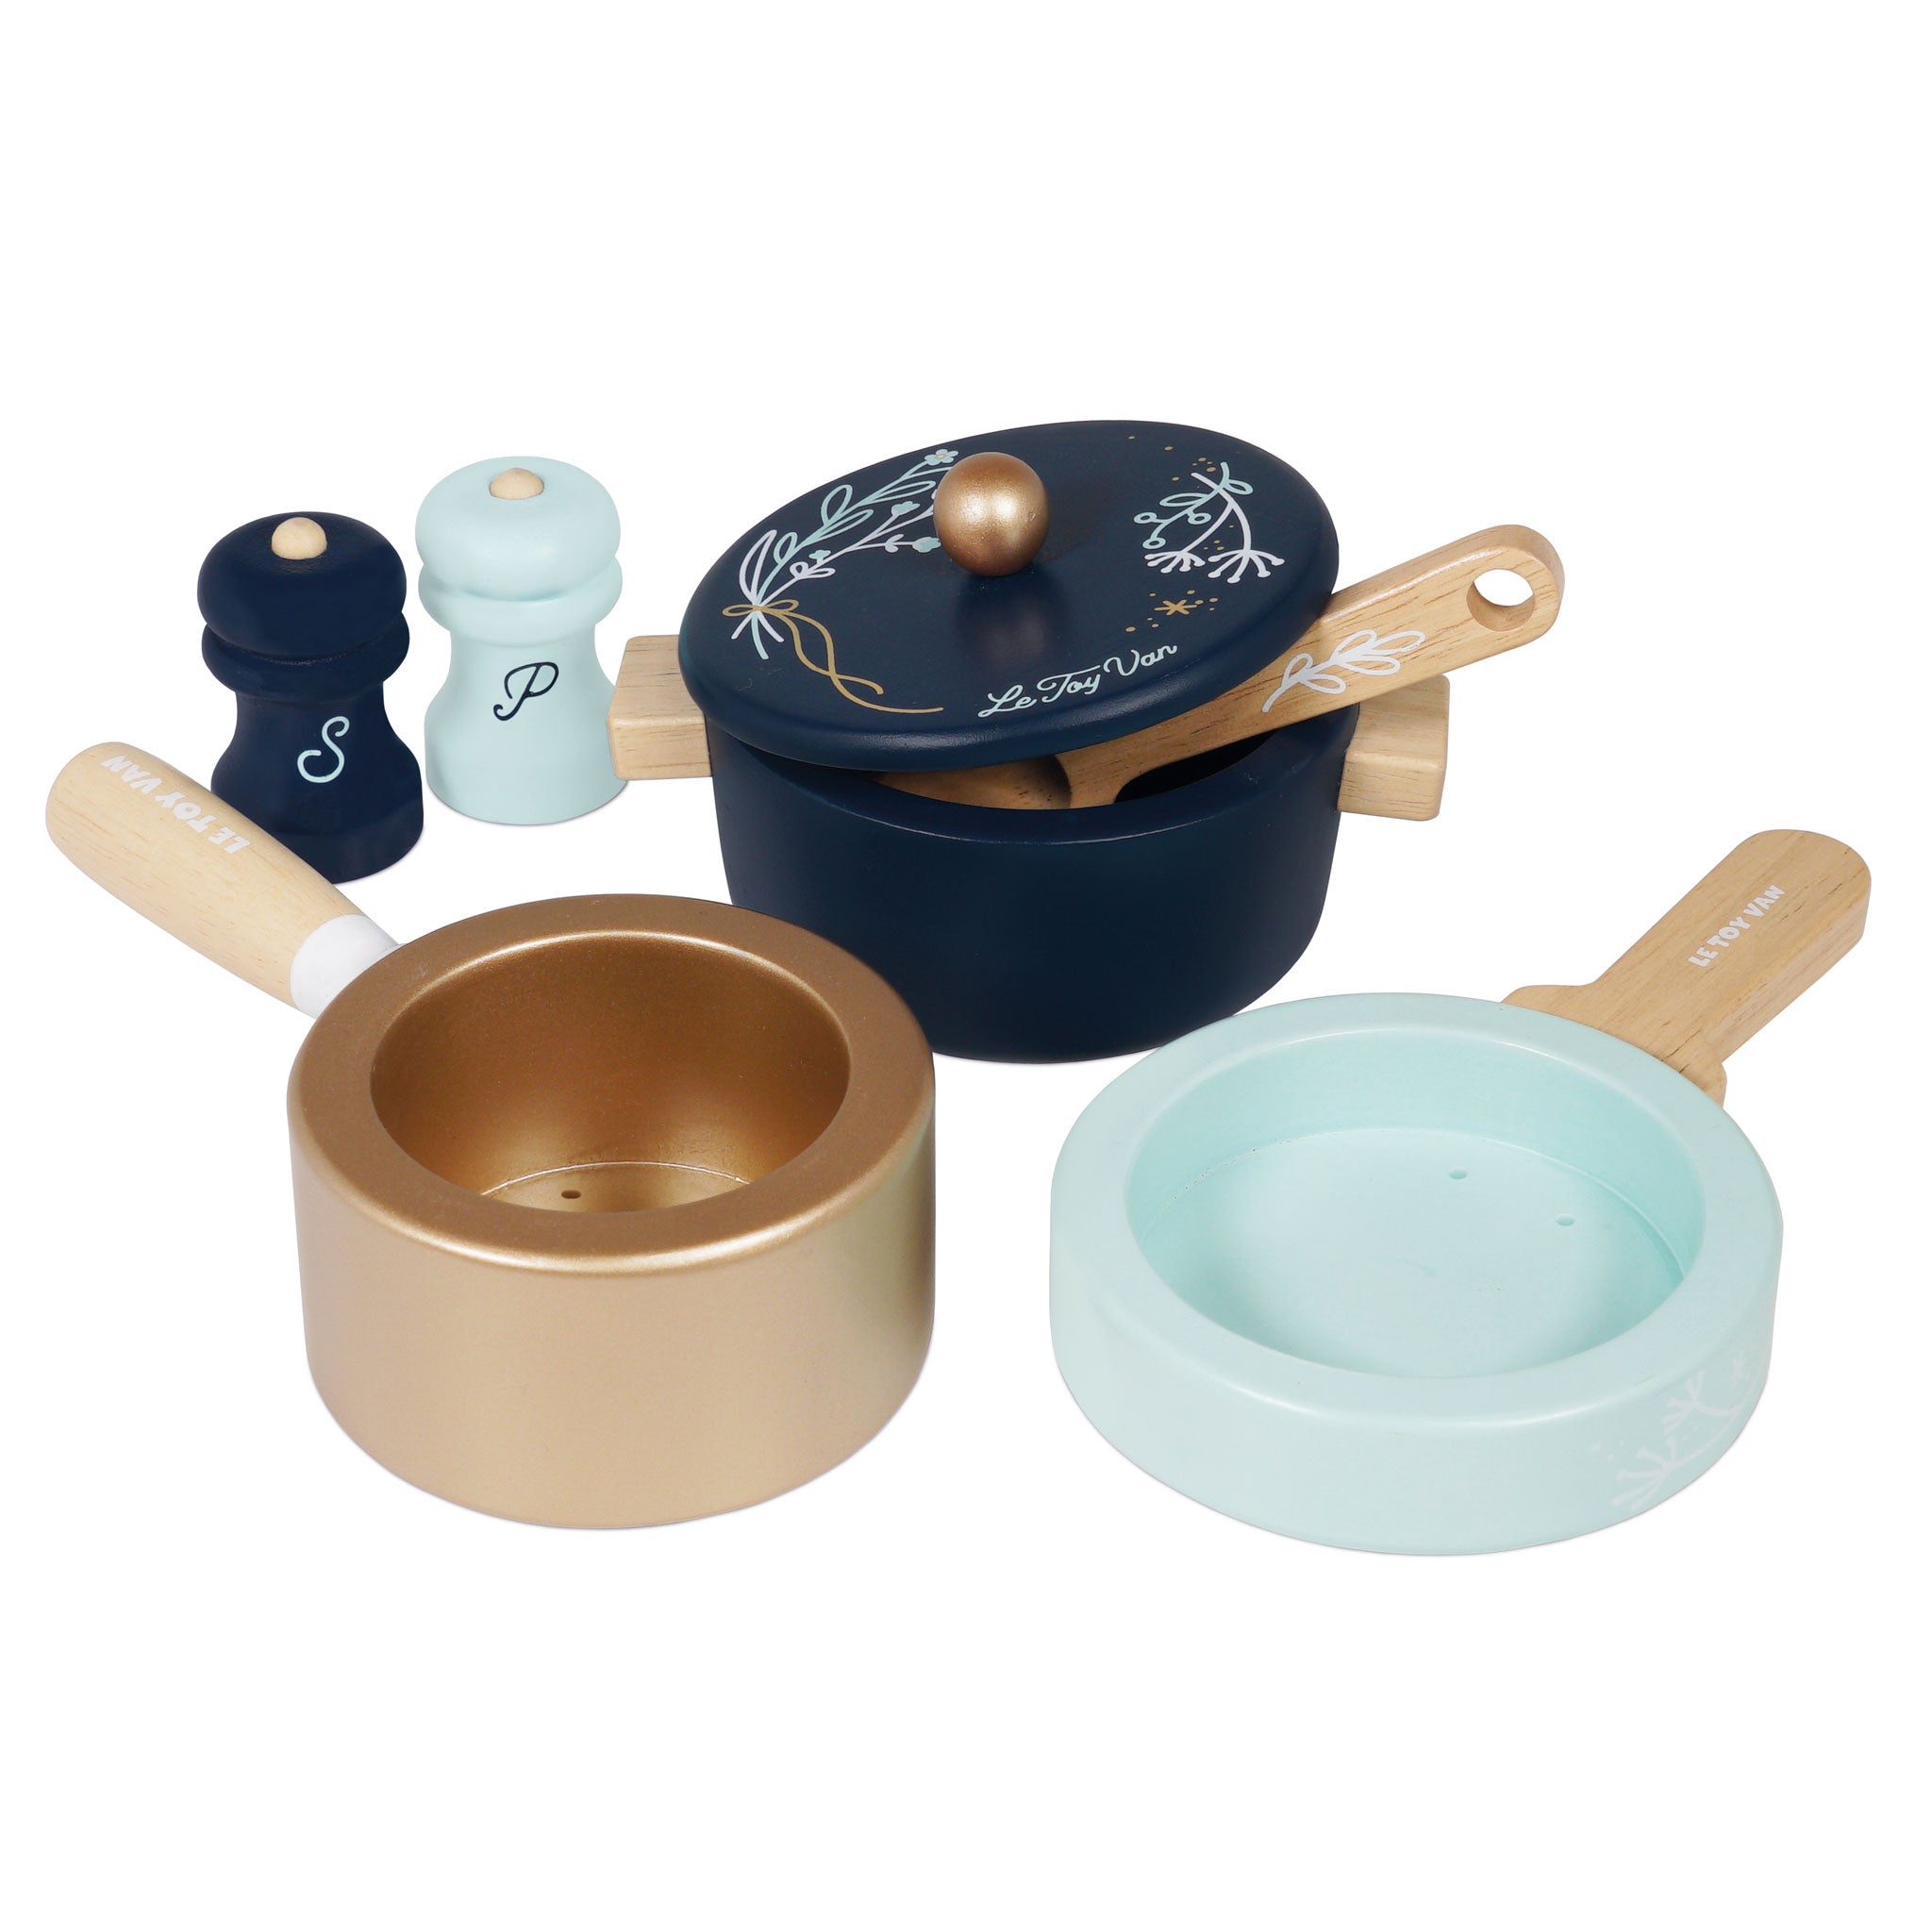 Pots & Pans Kitchen Accessories